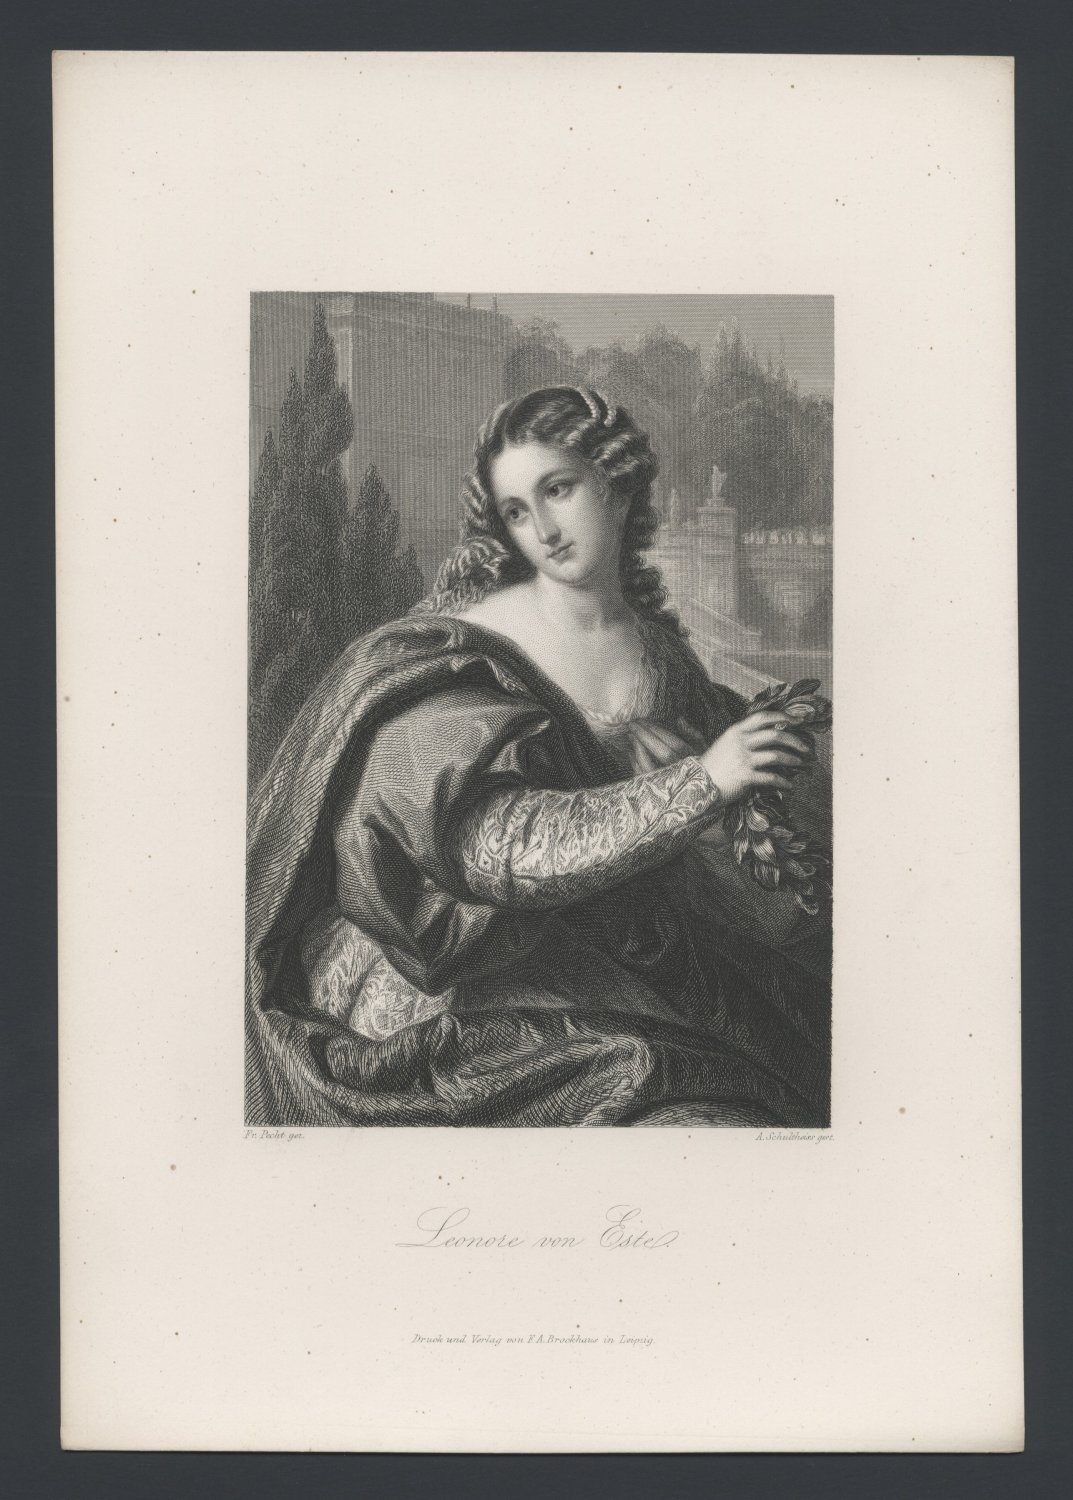 Leonore von Este (Freies Deutsches Hochstift / Frankfurter Goethe-Museum CC BY-NC-SA)